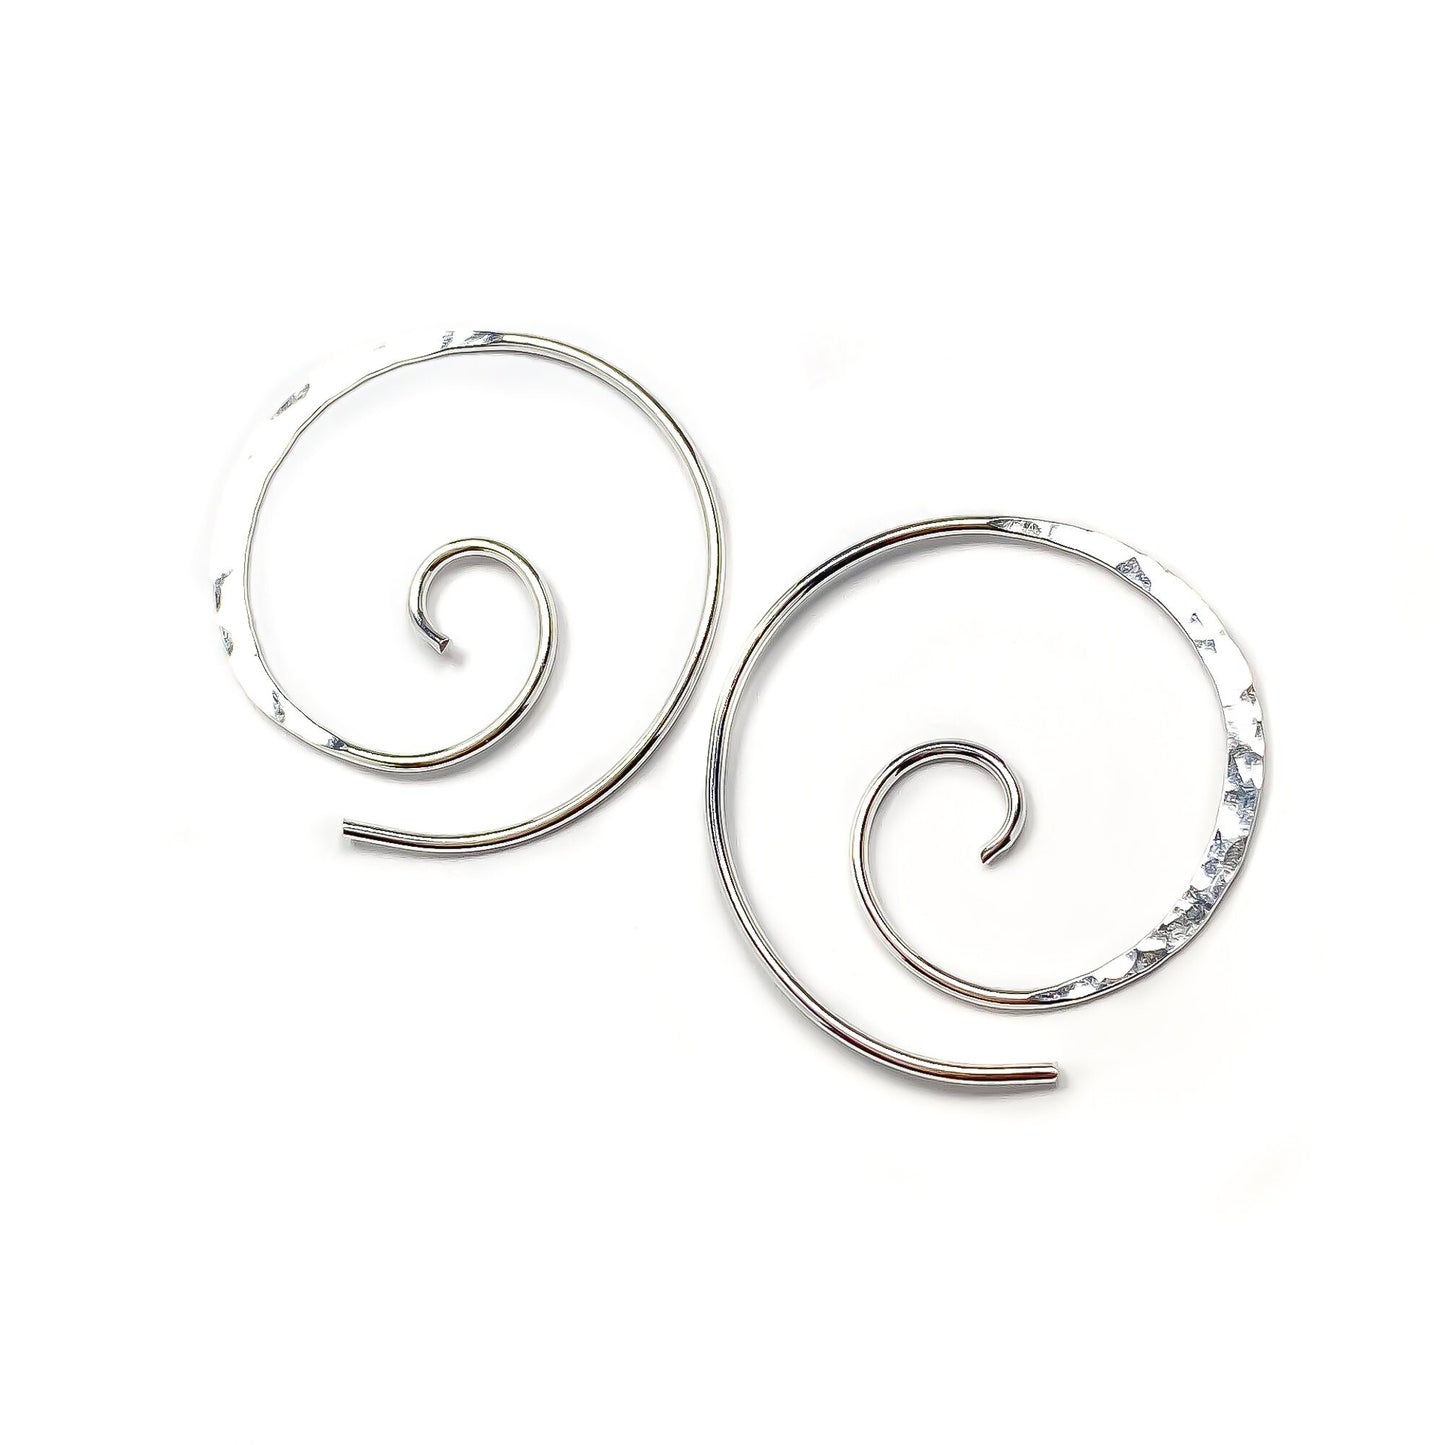 Hammered Spiral Hoop Earrings, Sterling Silver